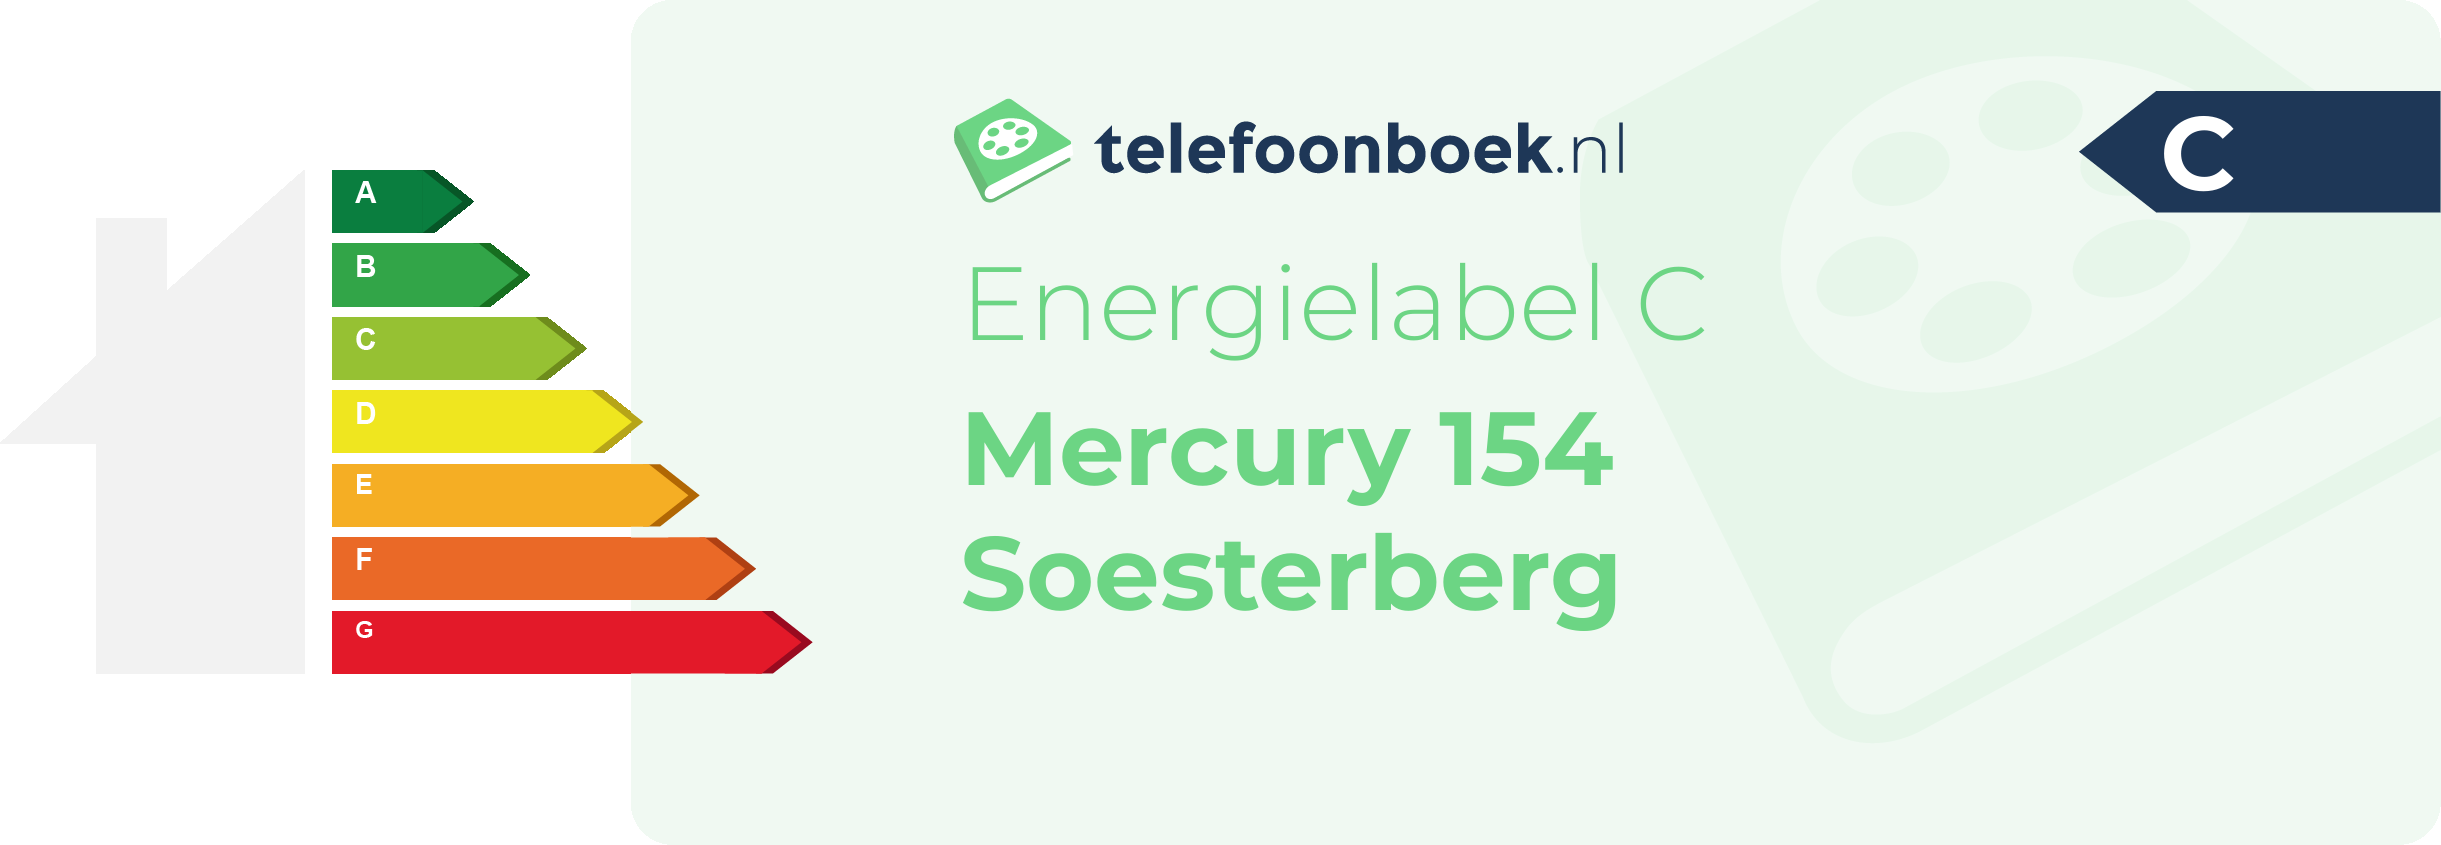 Energielabel Mercury 154 Soesterberg